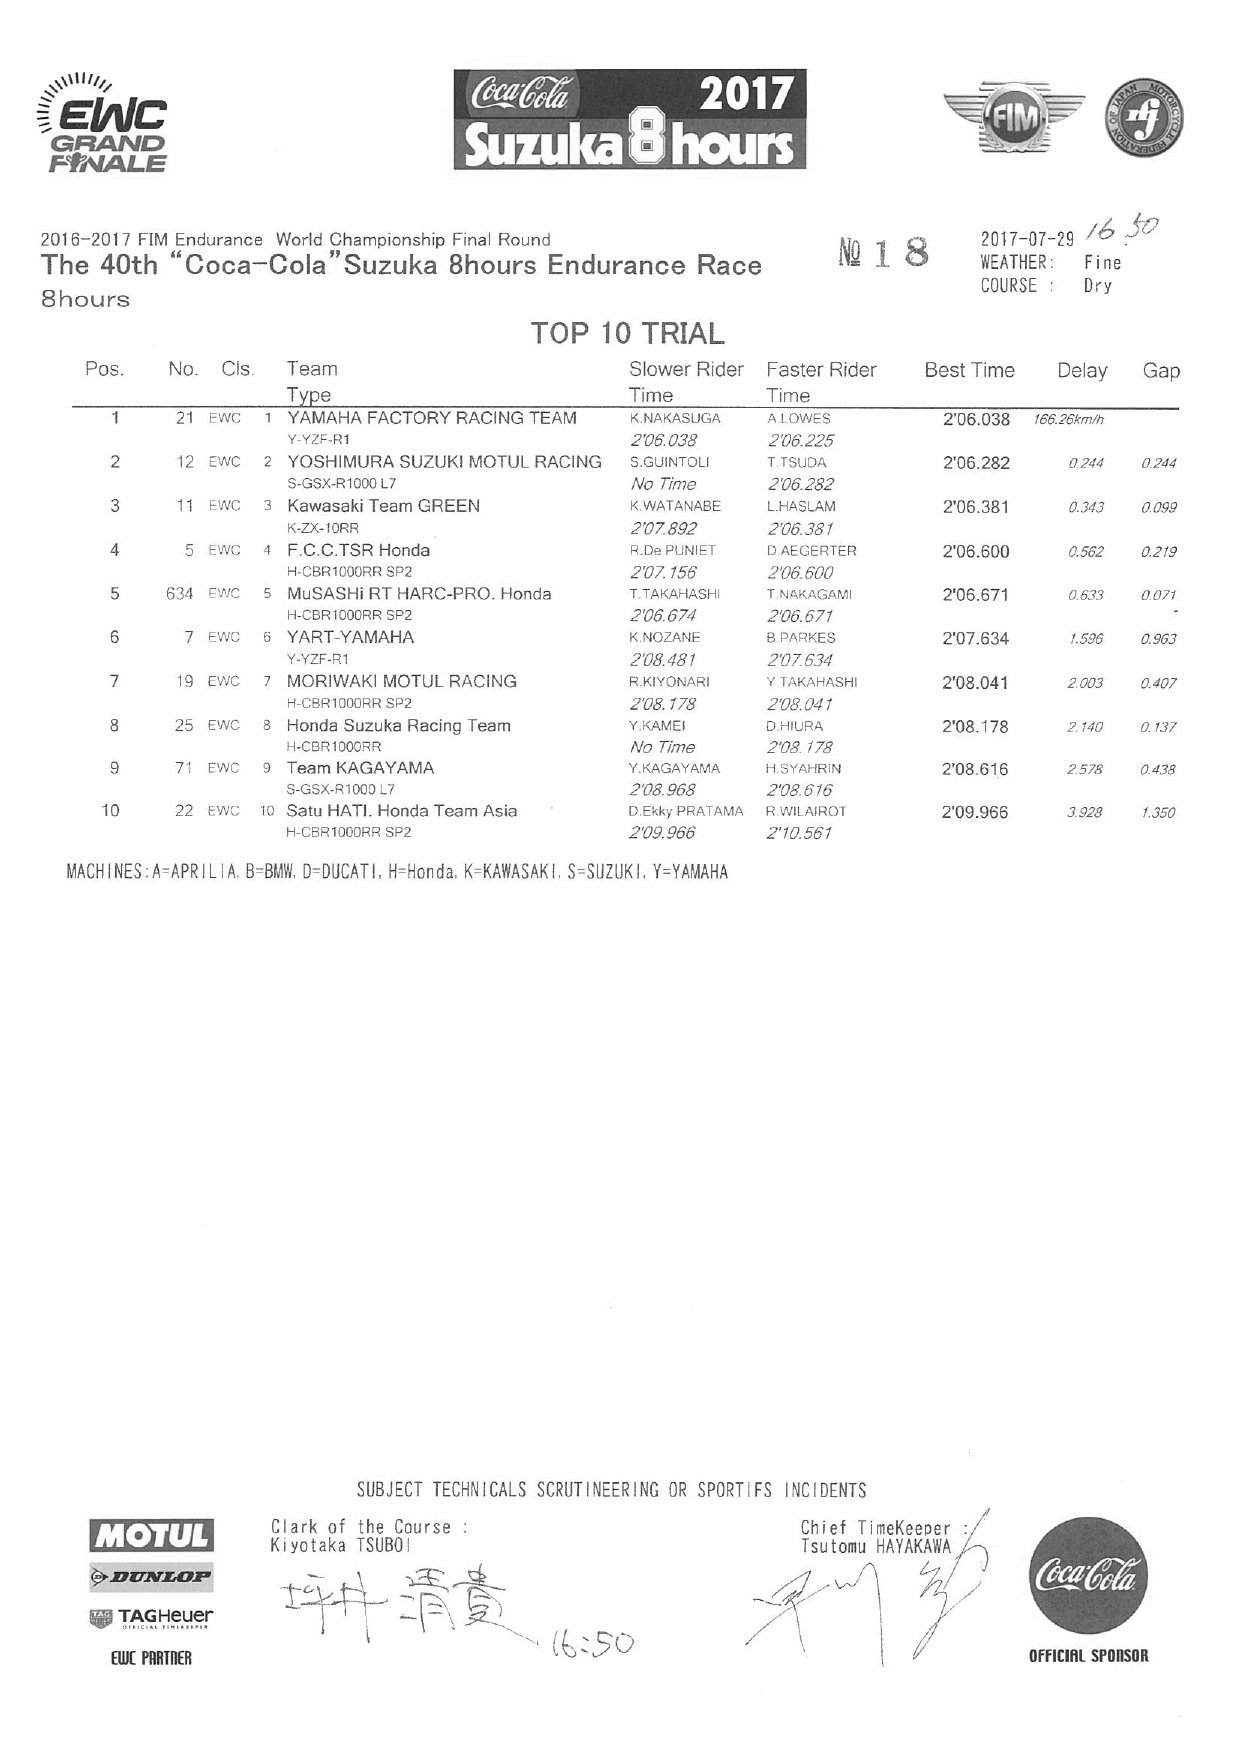 Результаты квалификации 40-й Suzuka 8 Hours - TOP-10 Trial